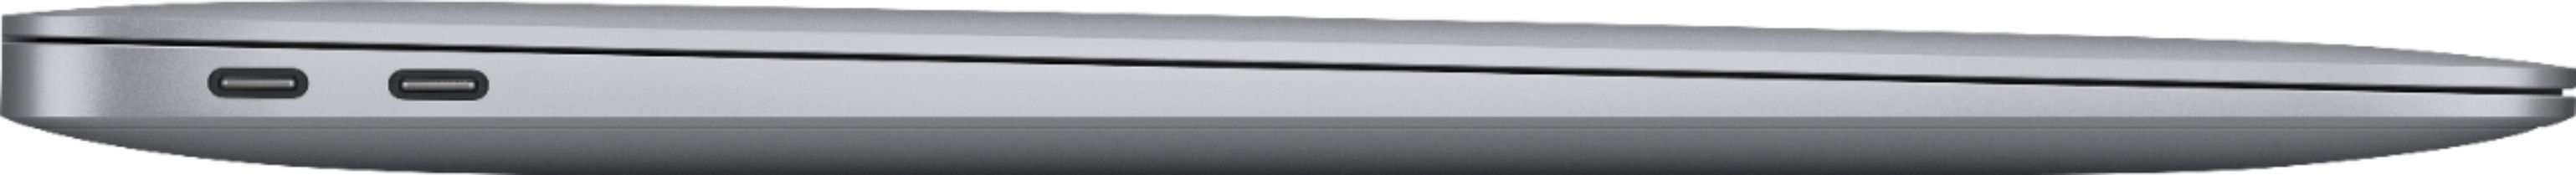 Bild von MacBook Air M1 2020 13,3" 16 GB RAM 1 TB SSD 8-Core GPU space grau